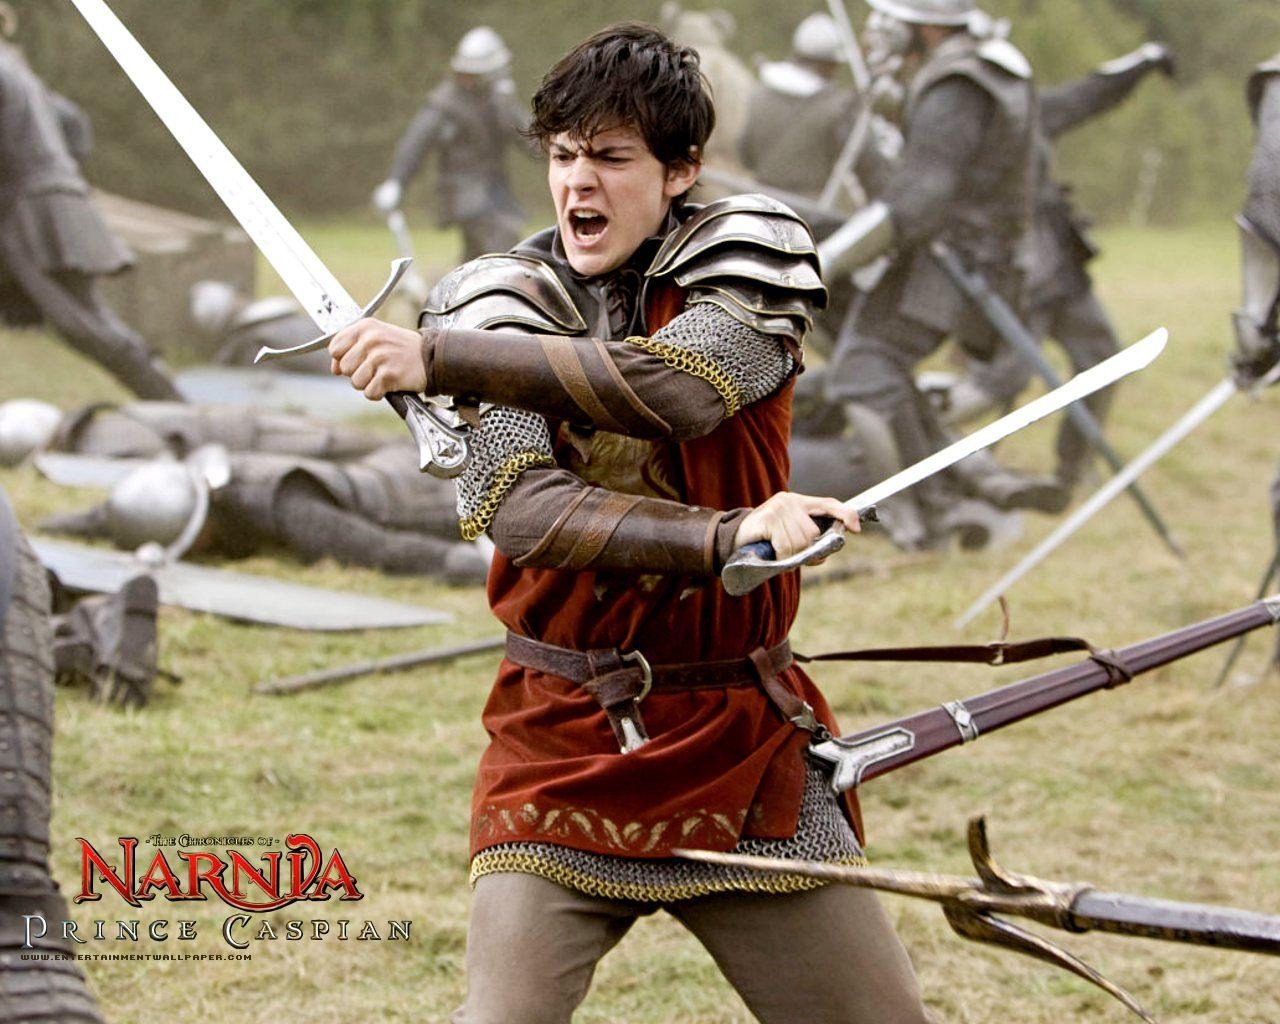 Le Monde de Narnia 2: Prince Caspian #8 - 1280x1024